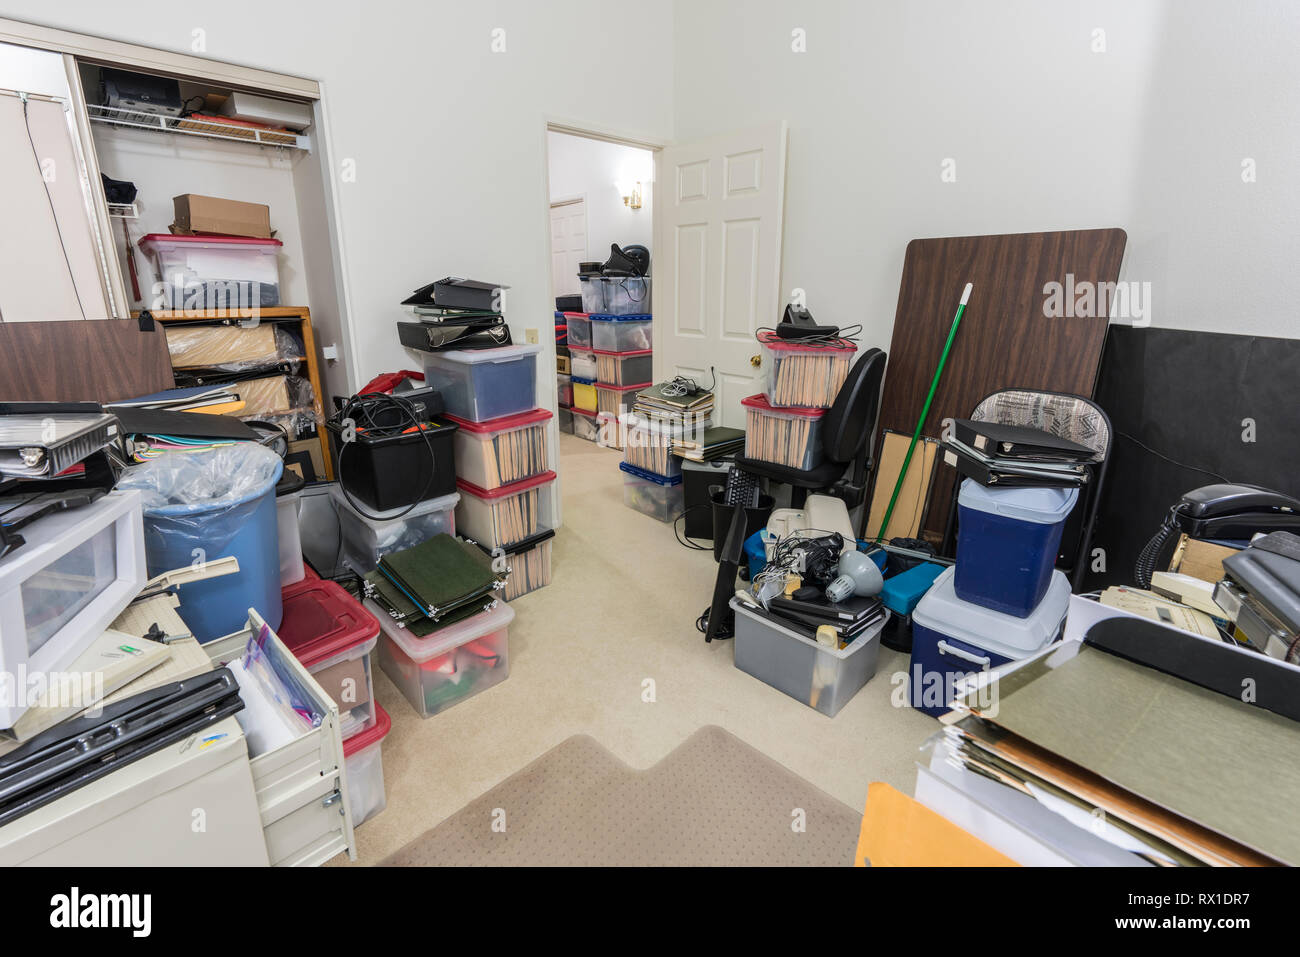 Confuso back office con scatole, il disordine delle vecchie attrezzature e stoccaggio di merci varie. Foto Stock